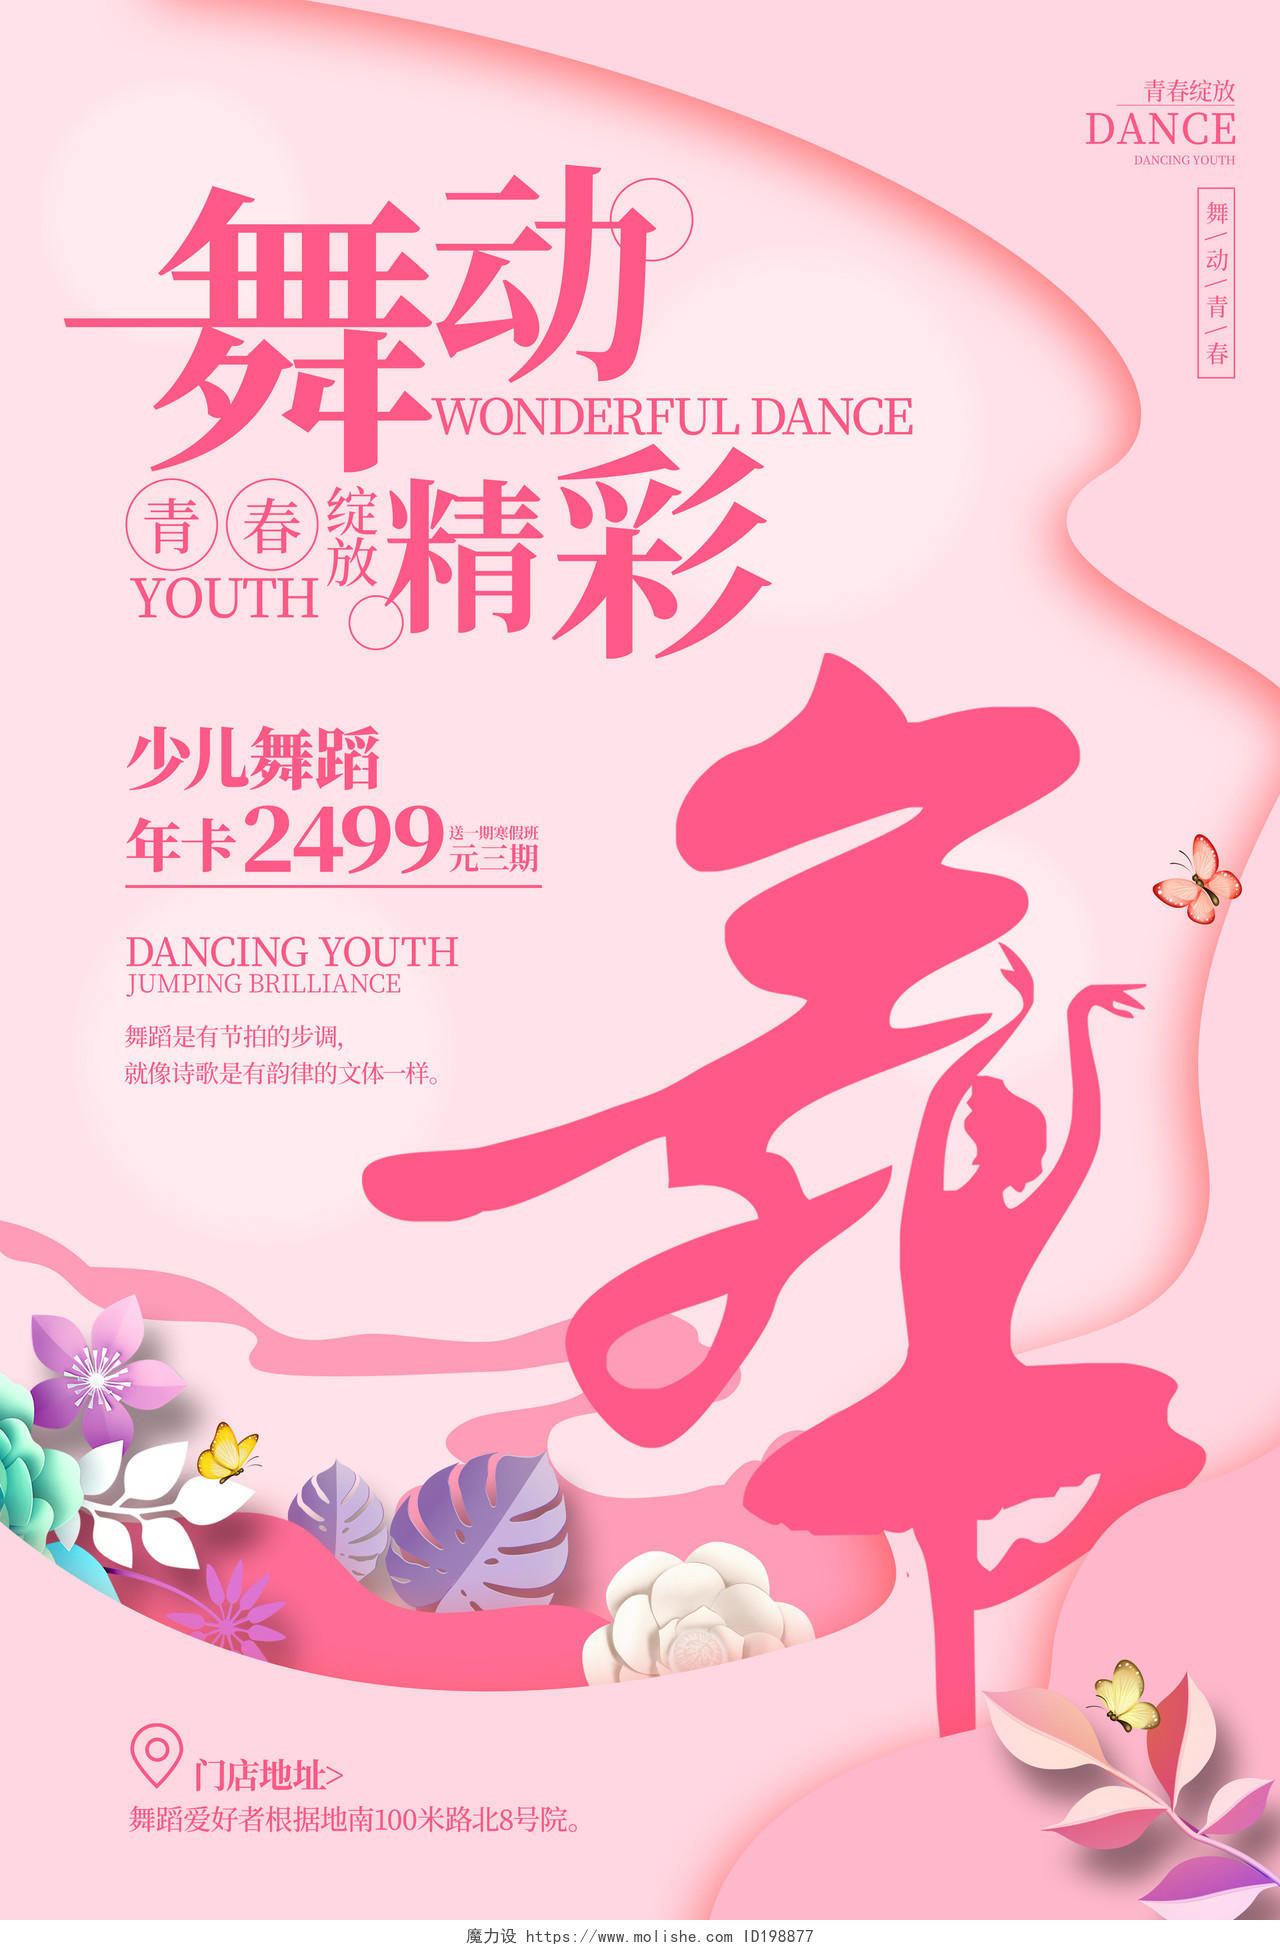 粉红色简约风格舞蹈艺术宣传海报舞蹈海报